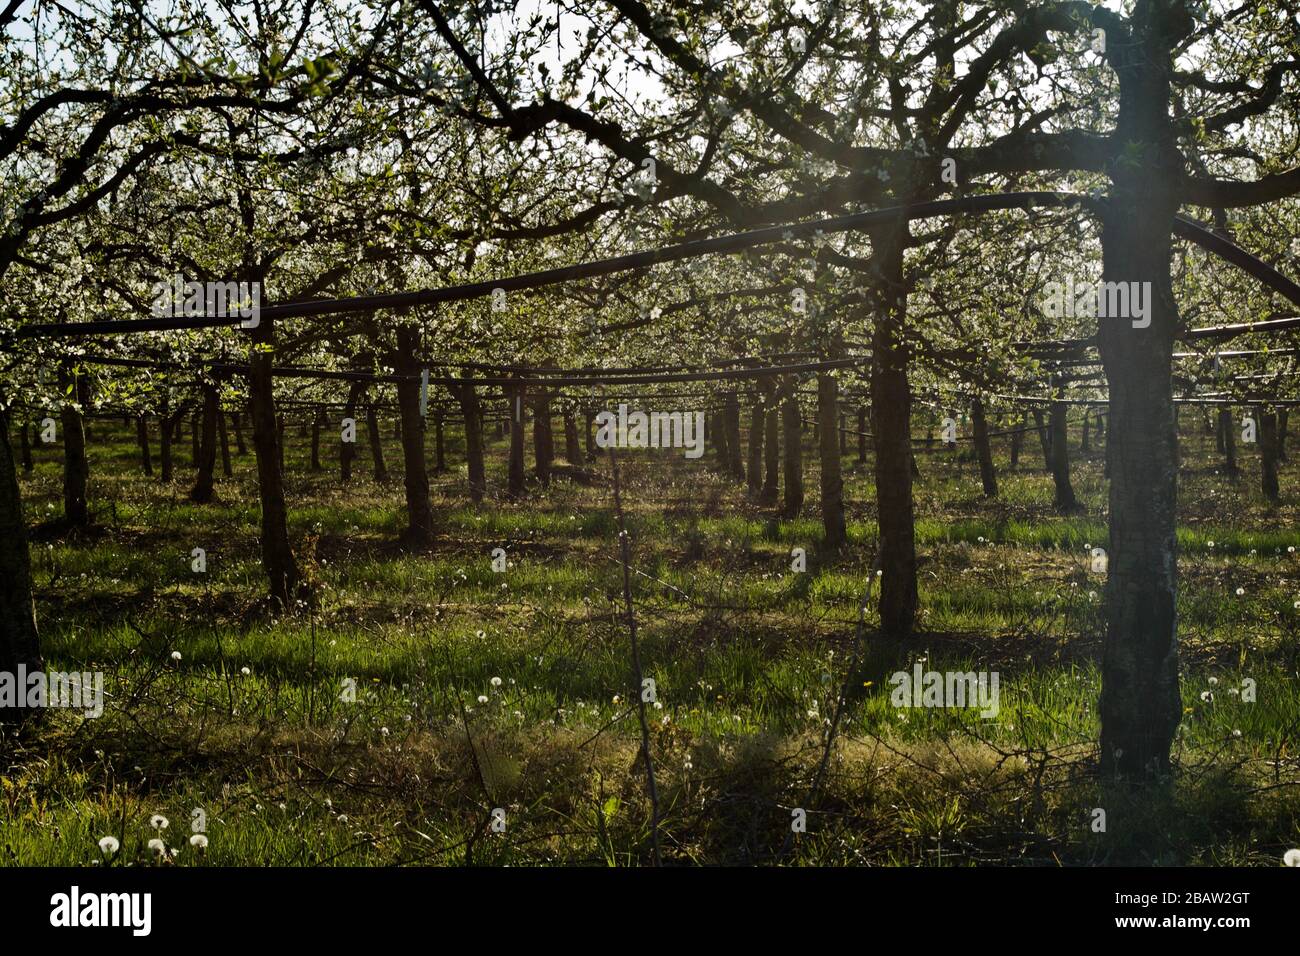 Fleur printanière sur prune / prunier arbres de la zone de croissance de Prune d'Agen dans le Lot-et-Garonne, France. Banque D'Images